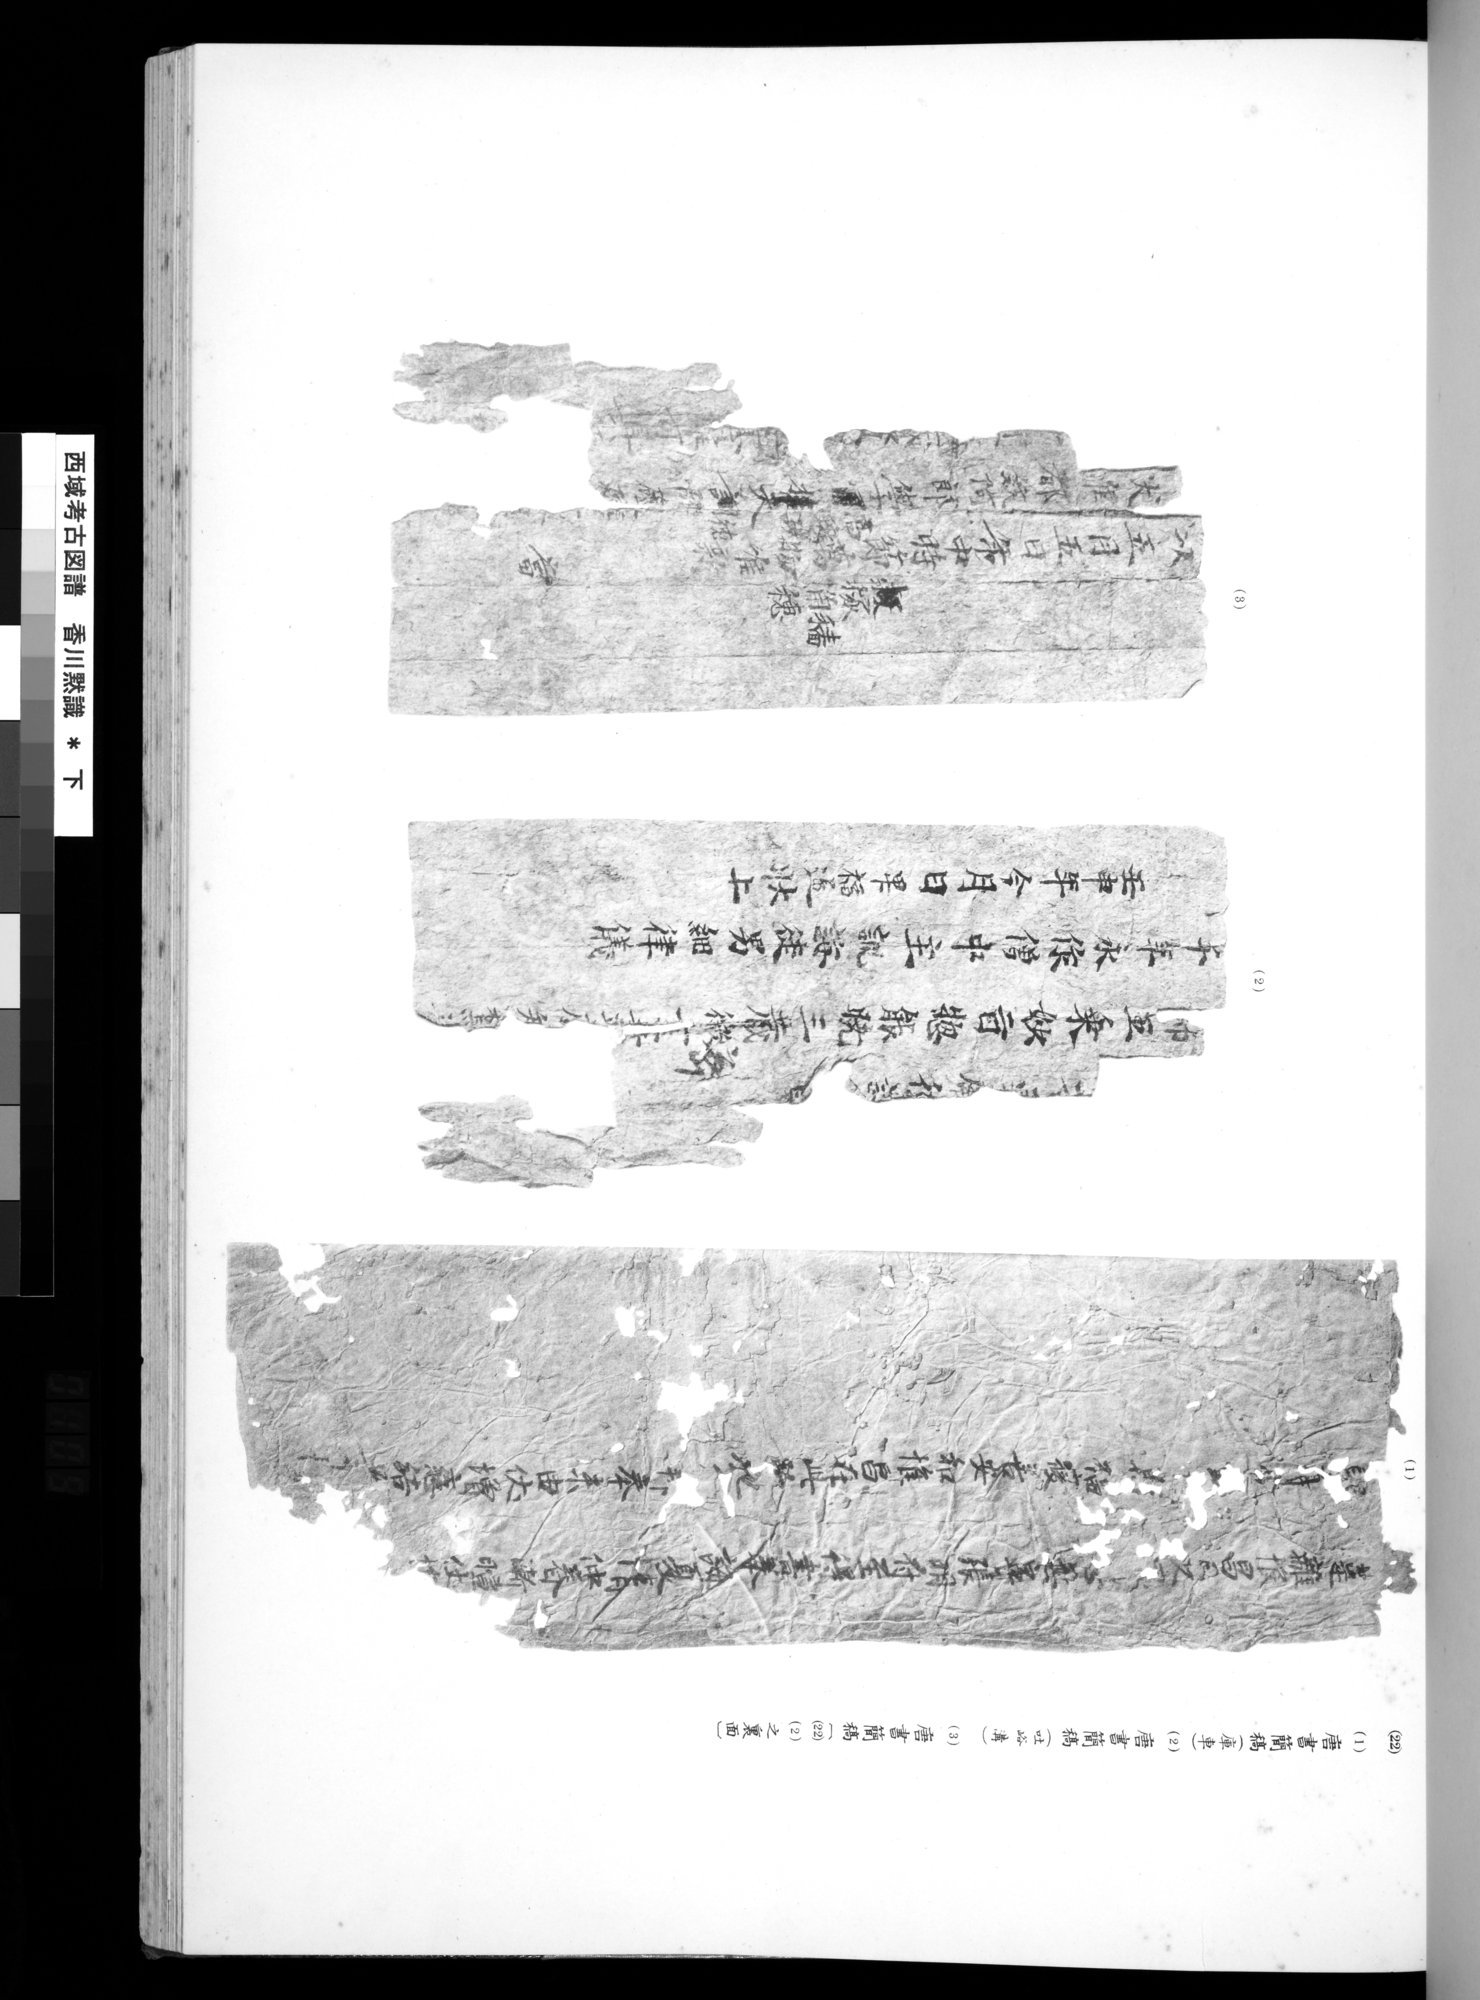 西域考古図譜 : vol.2 / Page 217 (Grayscale High Resolution Image)